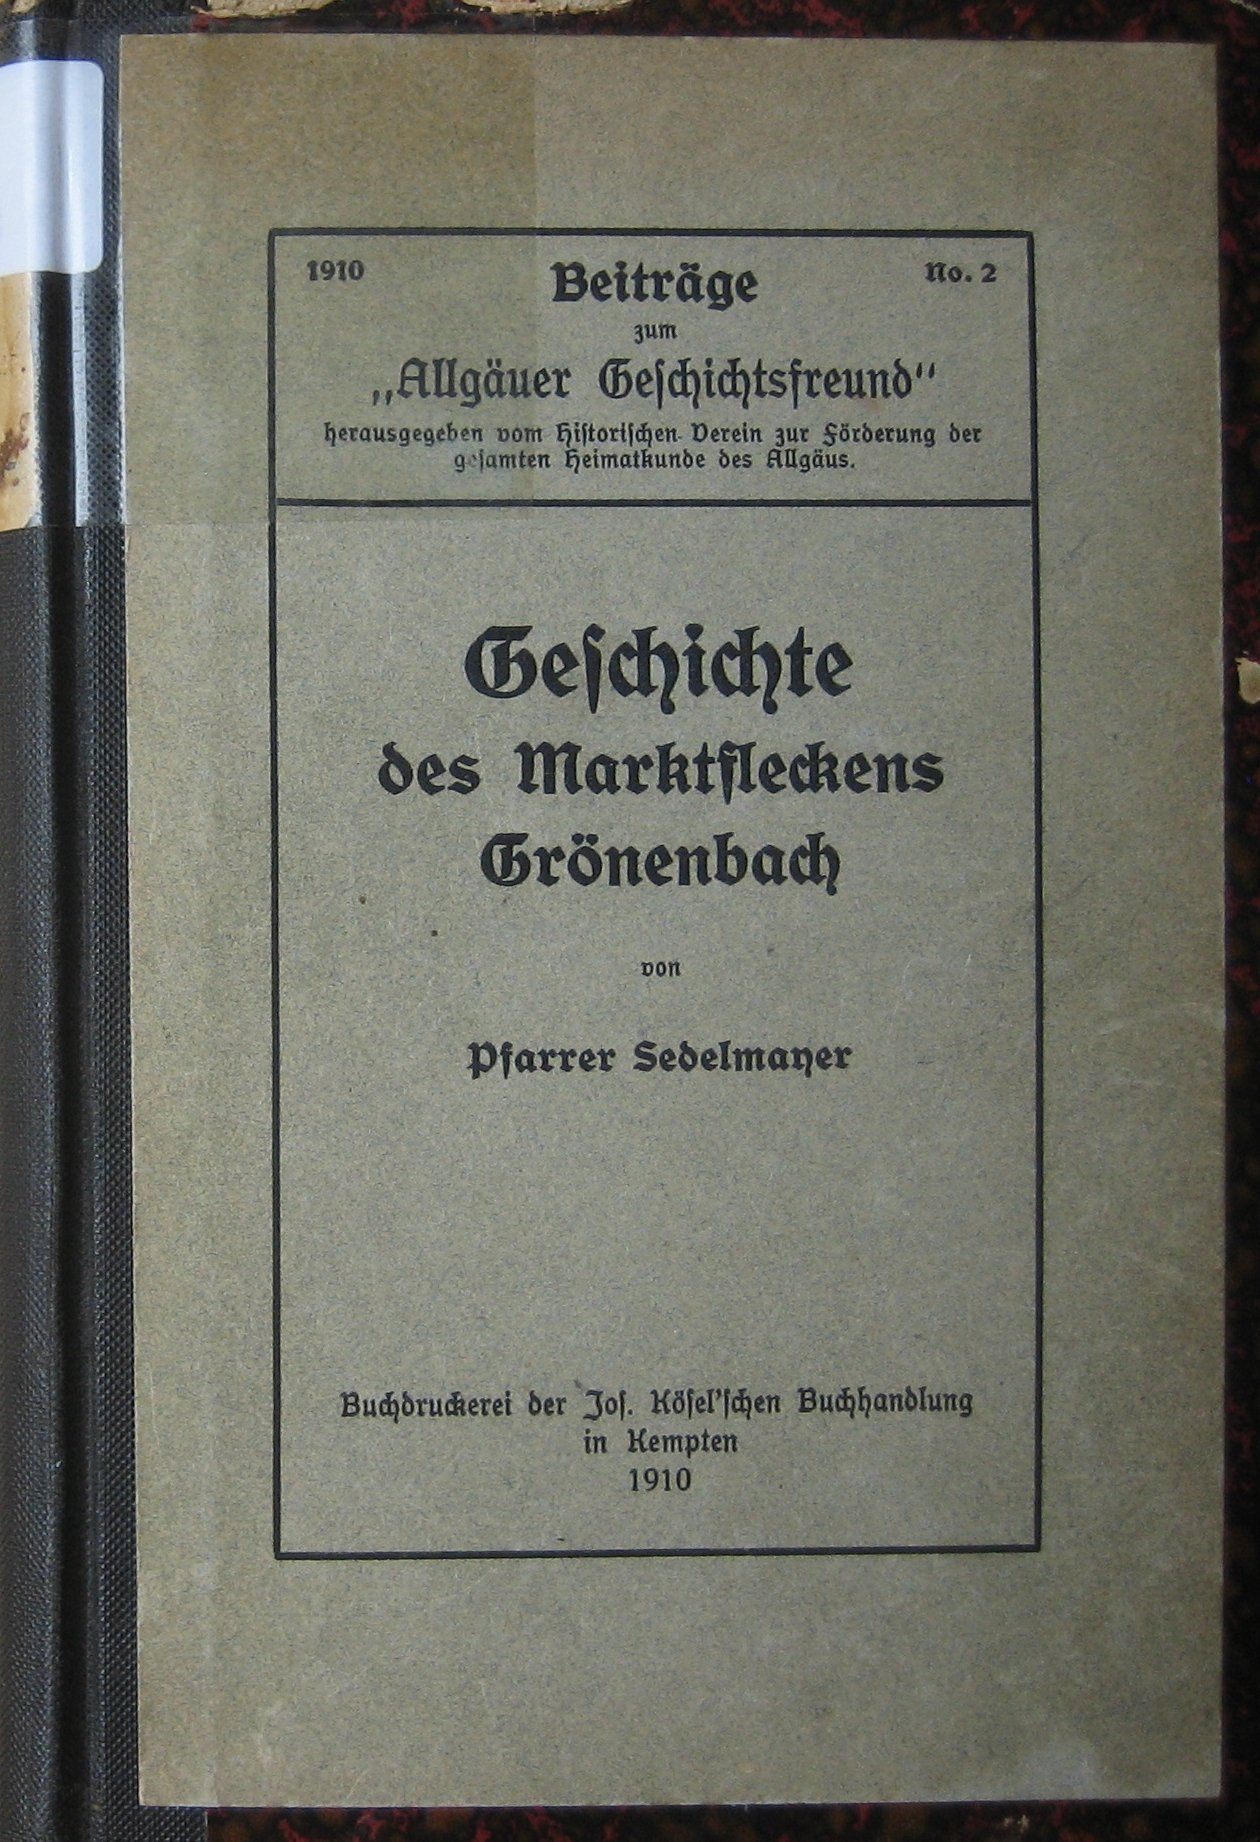 Geschichte des Marktfleckens Grönenbach, 1910